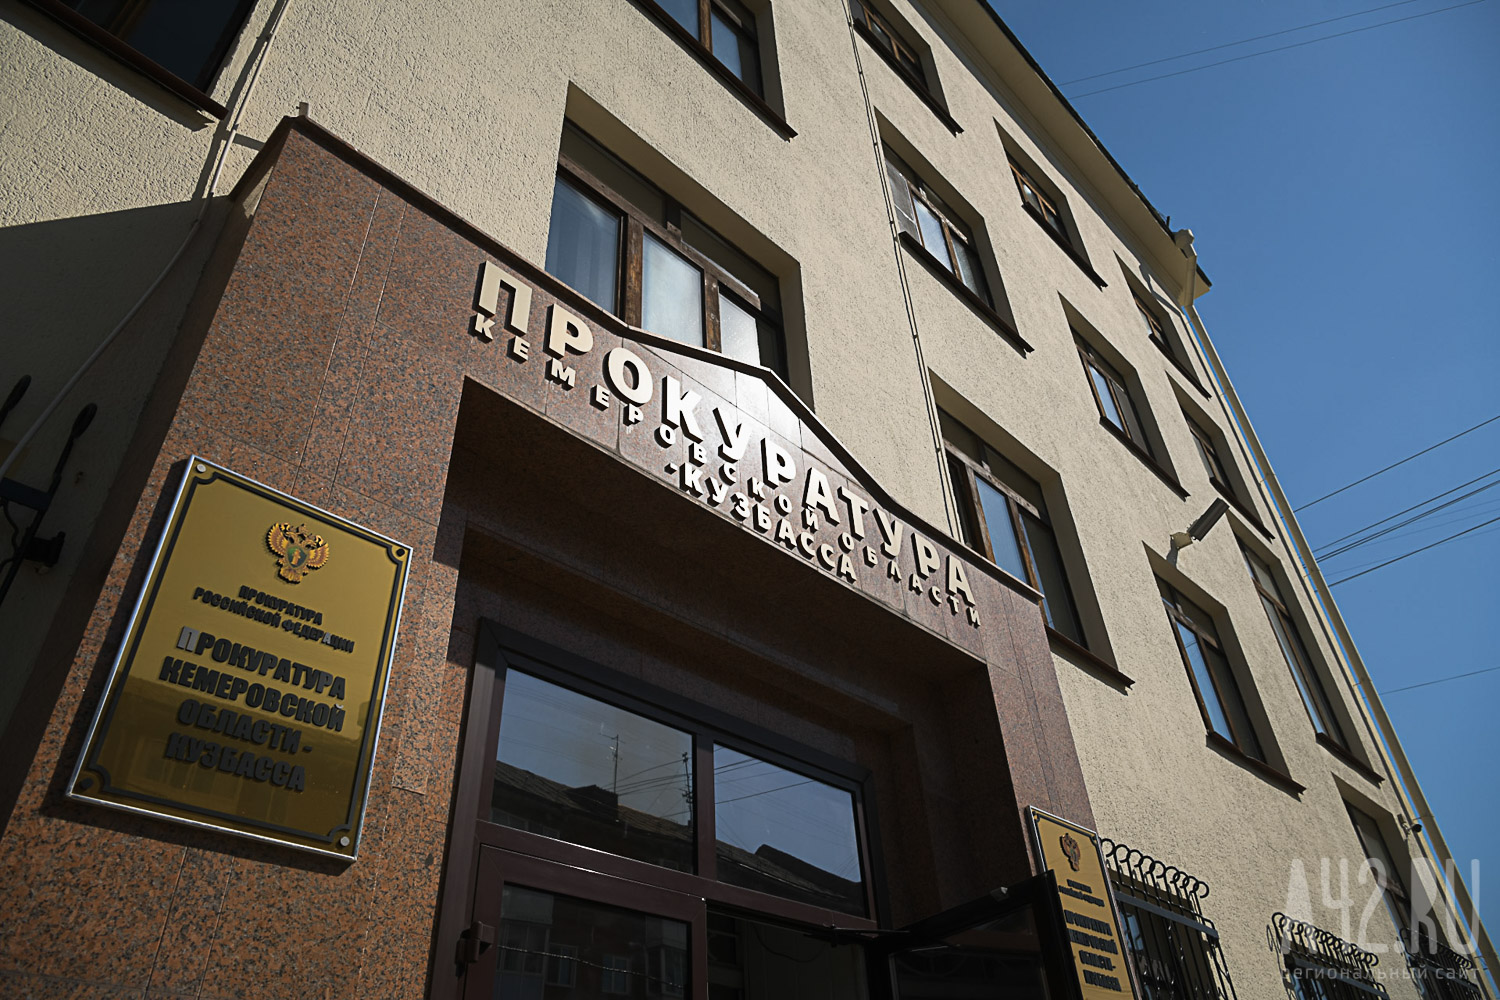 В Кузбассе прокуратура добилась выплаты 5 млн рублей рабочему, ставшему инвалидом после травмы